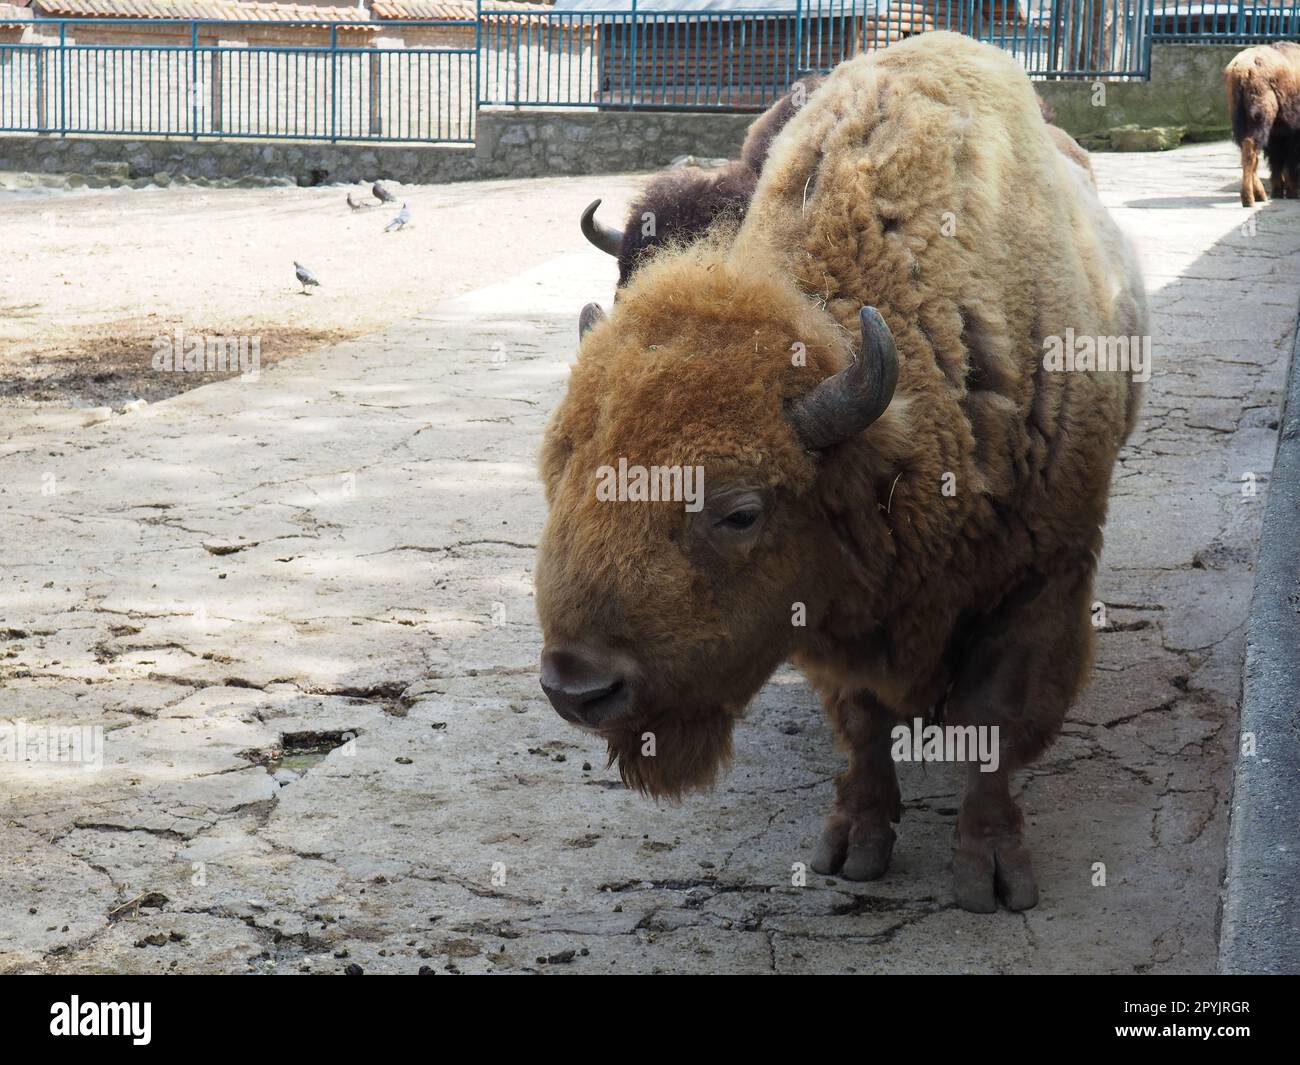 Bison, oder amerikanische Bison, ist eine Art von Klauensäugetieren aus dem Stamm der Bullen der Rinderfamilie. Bison atmet, blinkt und wackelt mit den Ohren Stockfoto